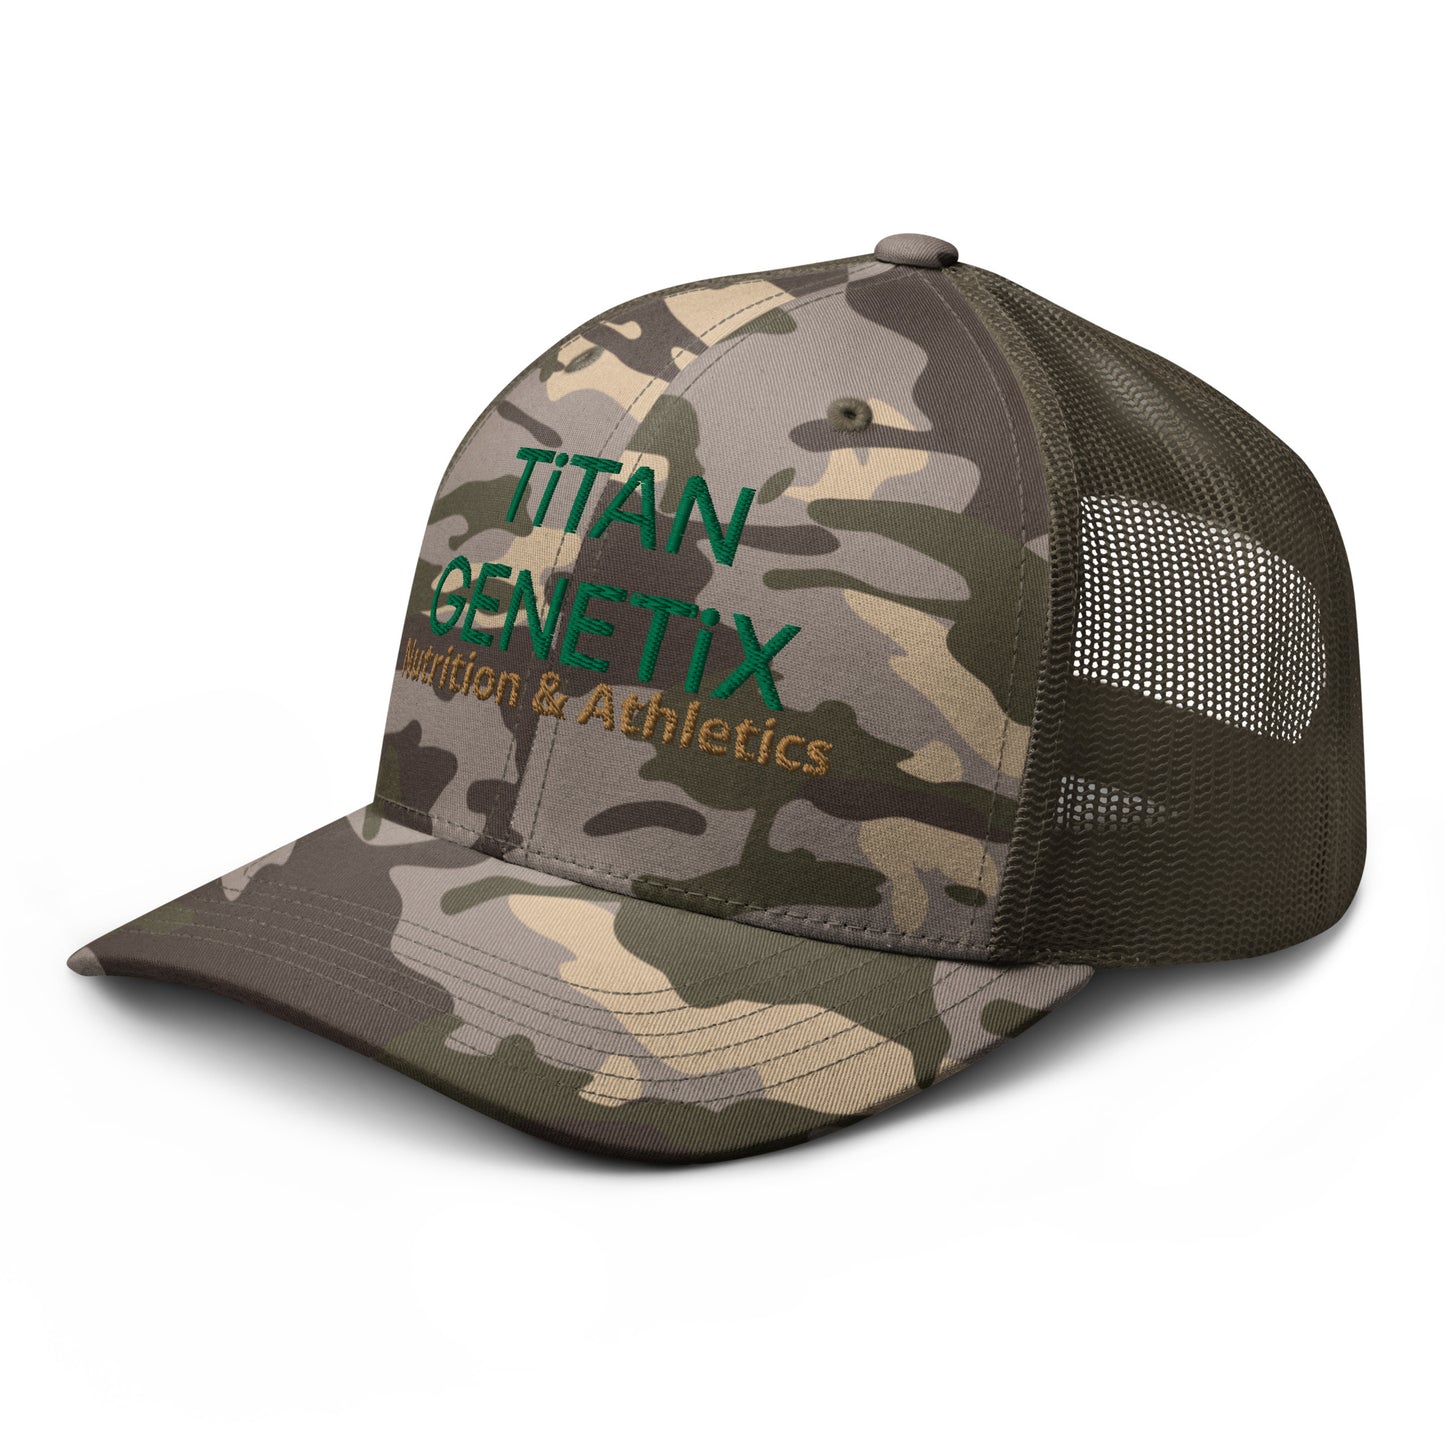 Titan Genetix Camouflage Trucker Hat